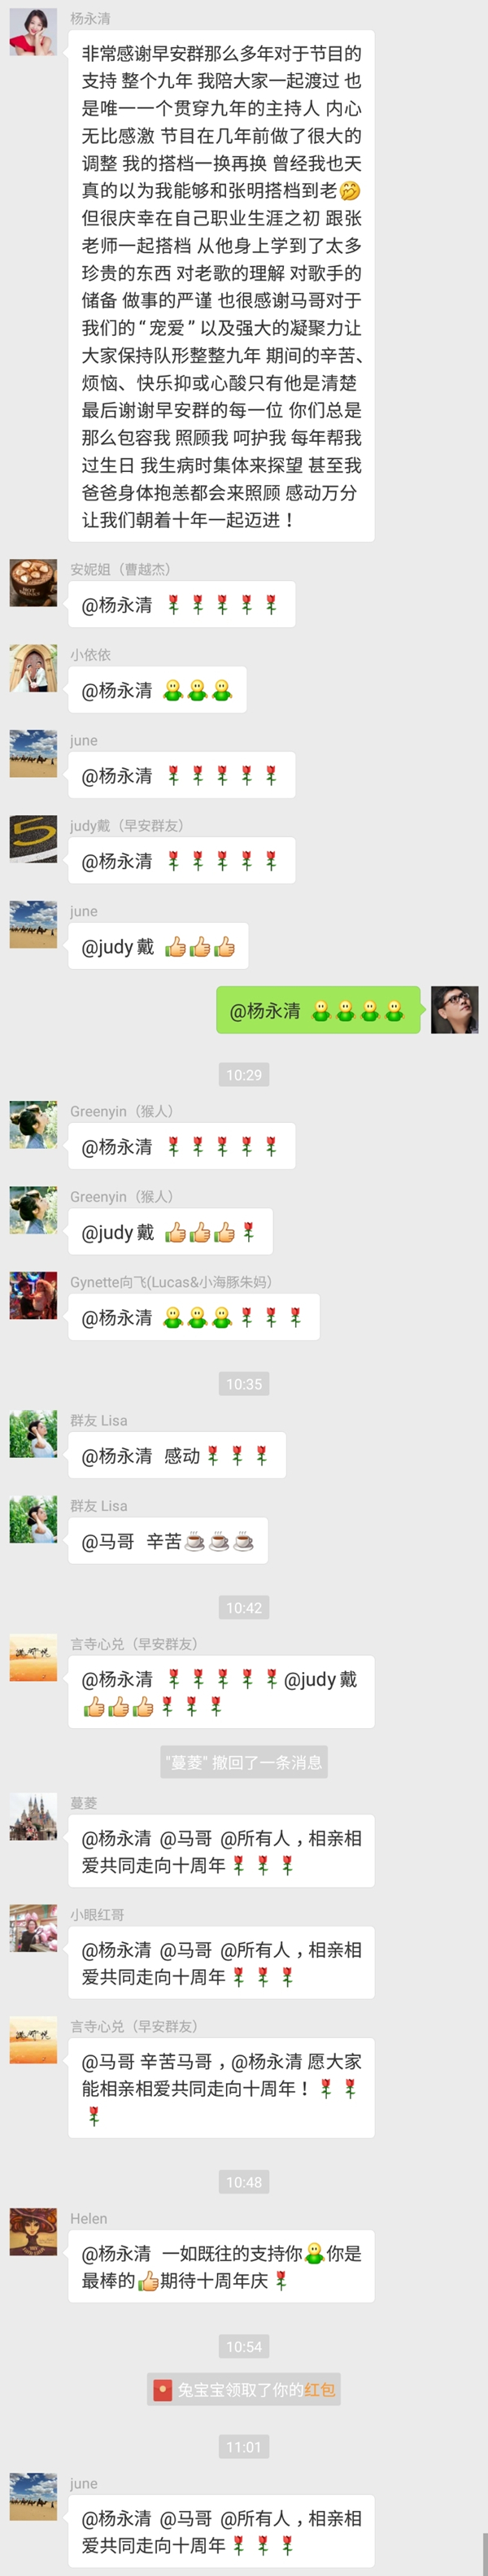 Screenshot_20180922-110322_WeChat.jpg